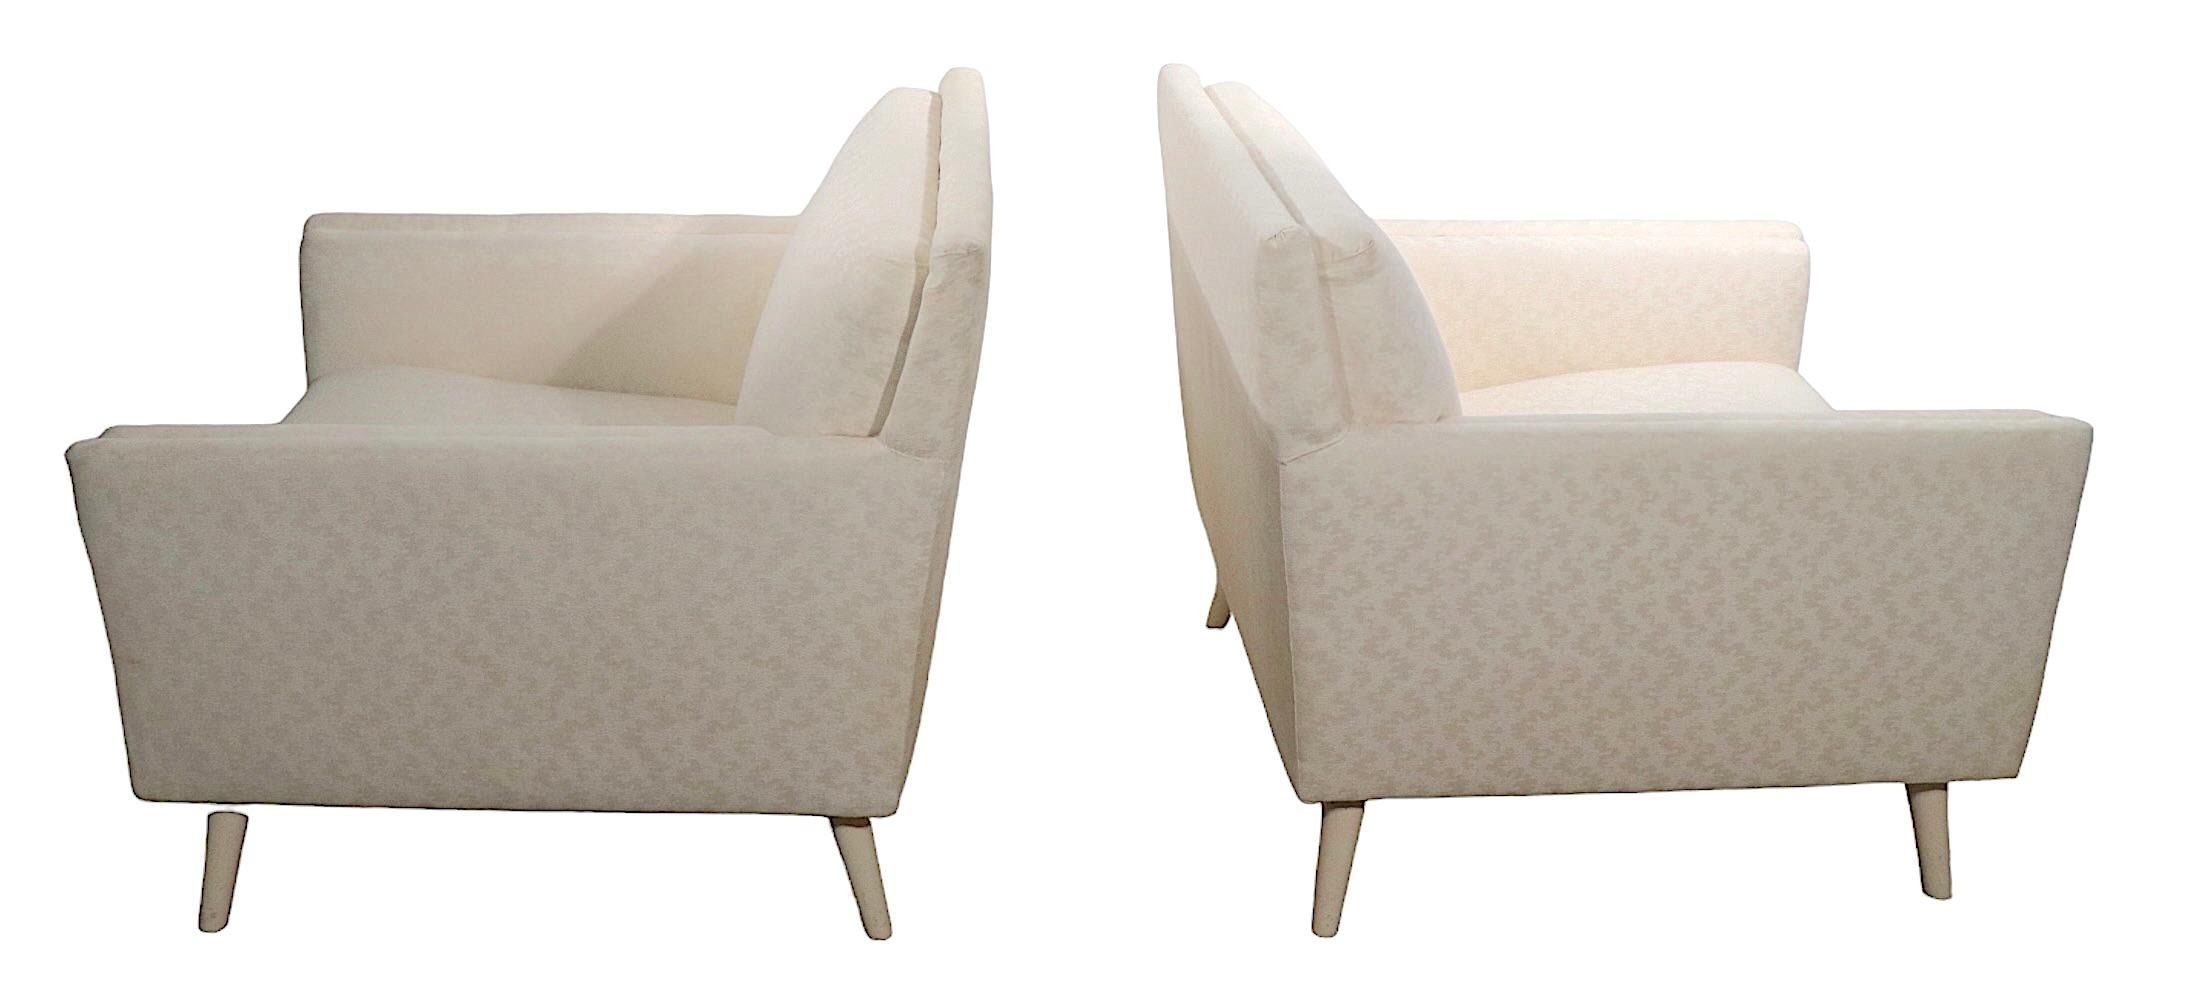 Chaises longues élégantes fabriquées dans les années 1950, attribuées à Directional Furniture Company, à la manière de Paul McCobb. Les deux chaises sont structurellement saines et robustes, elles ont été retapissées dans les années 1960/1970 et les